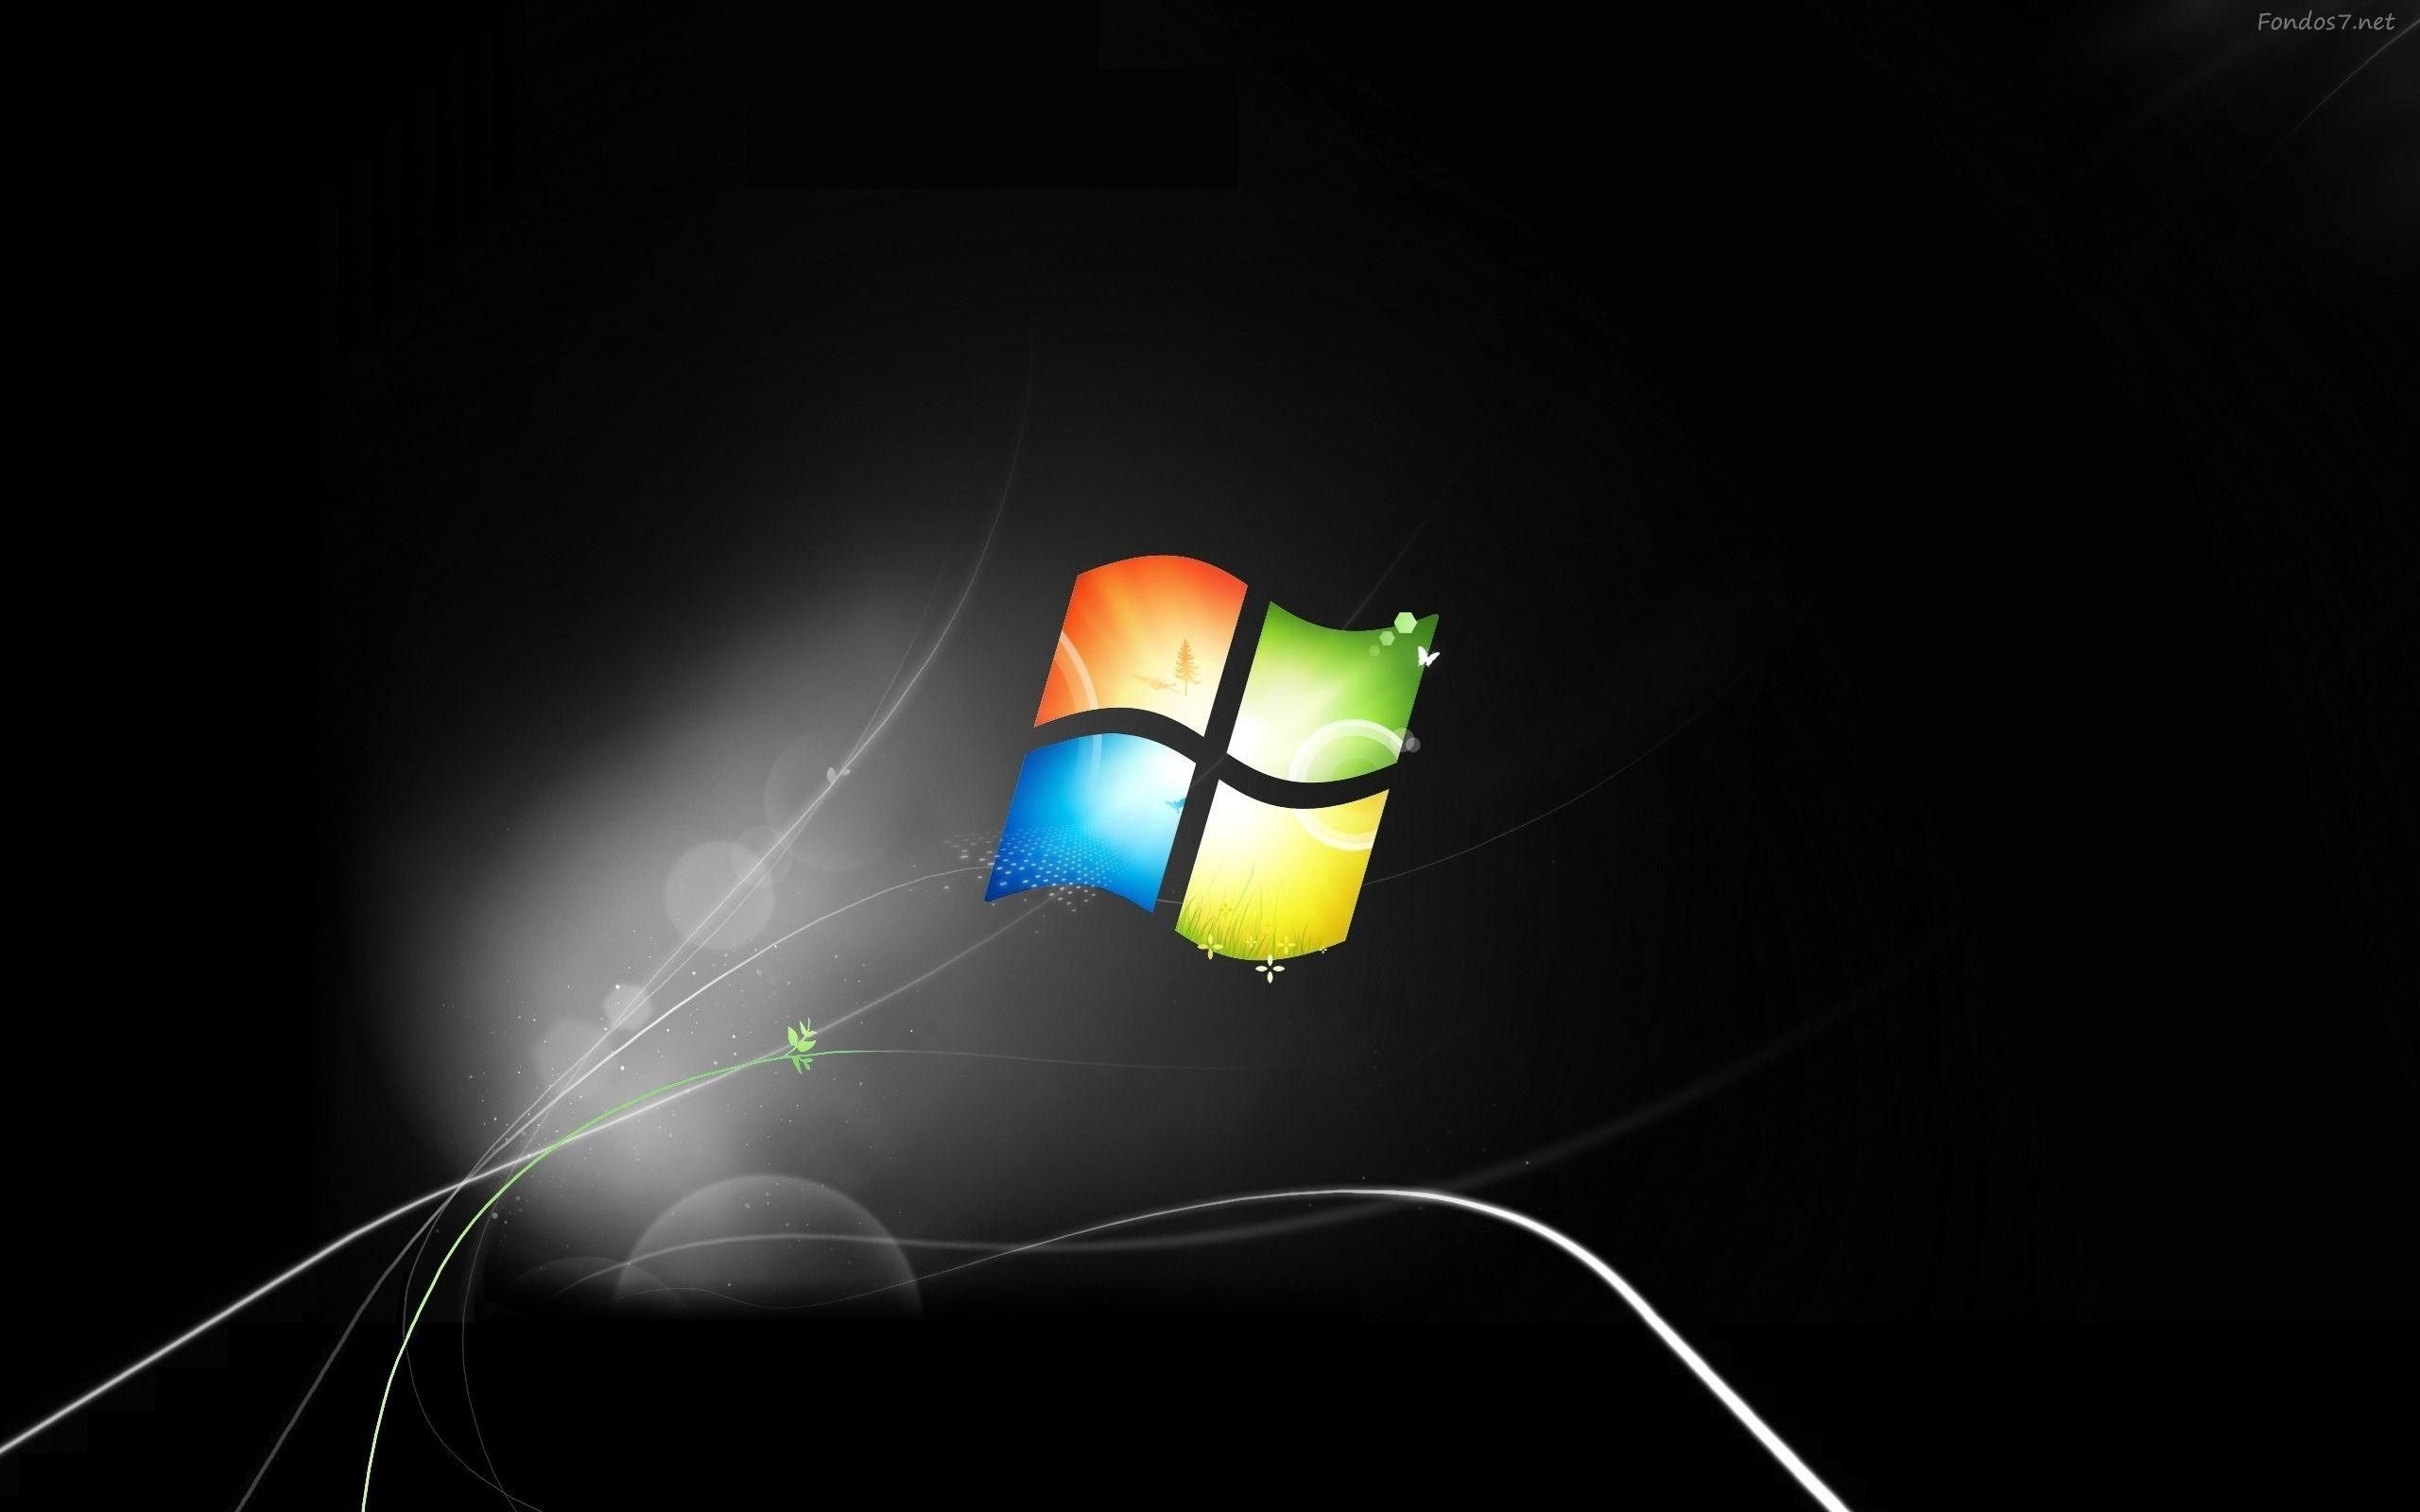 Windows 7 wallpapers - cập nhật phong cách cho màn hình của bạn! Với một kho lưu trữ hình ảnh đa dạng và đẹp mắt, Windows 7 wallpapers mang đến cho bạn trải nghiệm độc đáo và tinh tế. Bạn có thể chọn cho mình những hình ảnh theo sở thích hoặc theo chủ đề, để tạo nên một không gian làm việc và giải trí thật độc đáo. Hãy đến với Windows 7 wallpapers để khám phá thế giới hình ảnh mới lạ nhé!